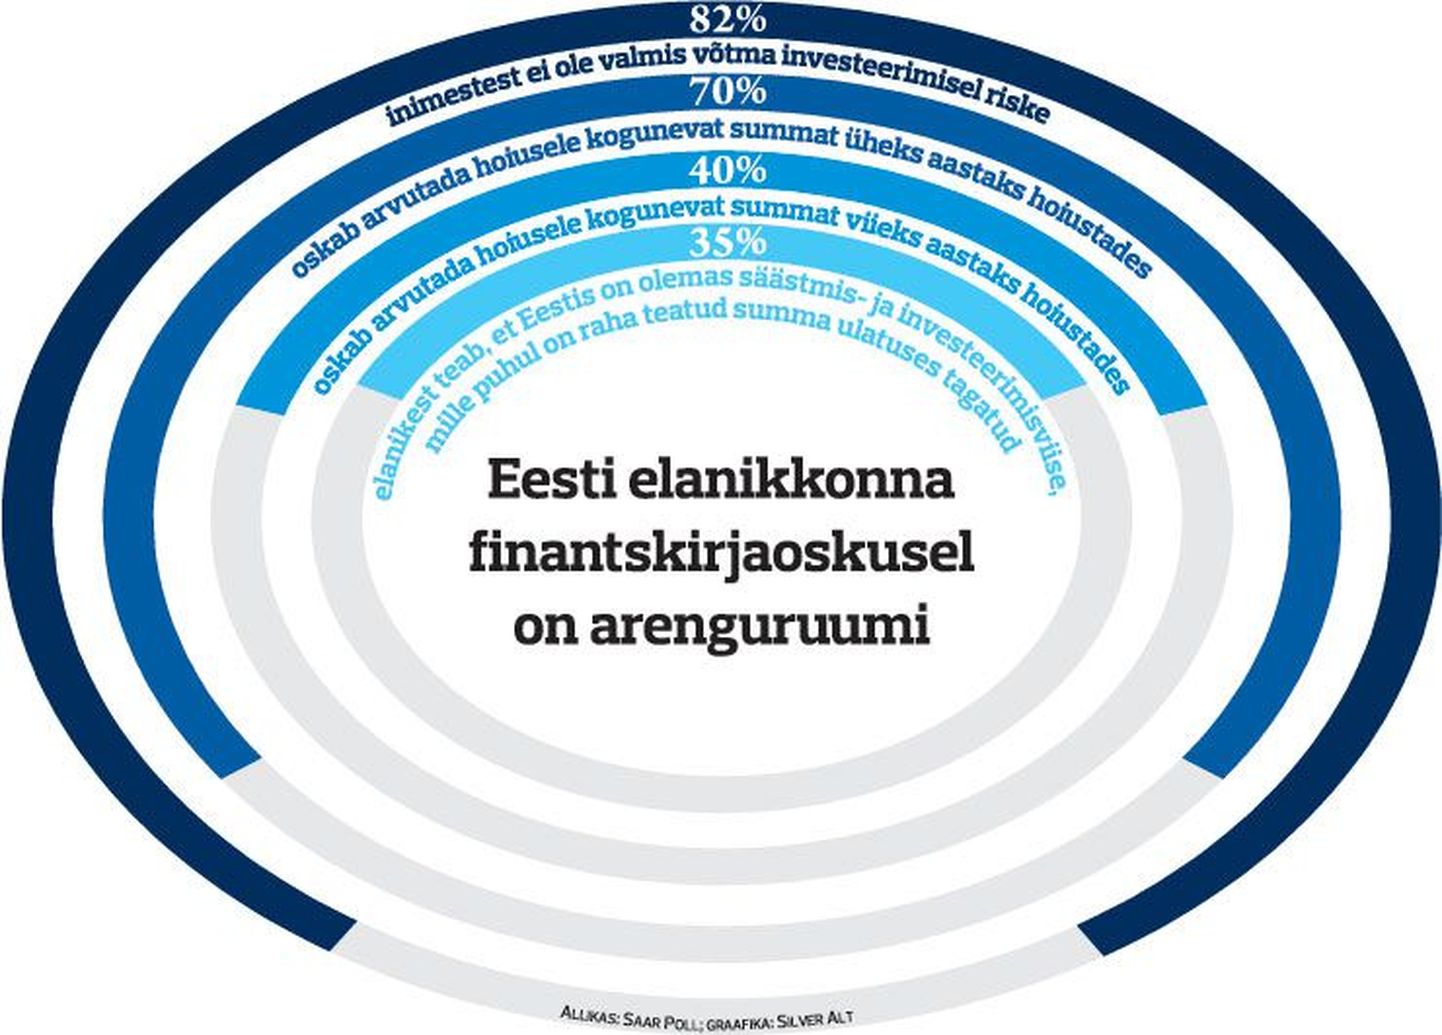 Eesti elanikkonna finantskirjaoskusel on arenguruumi.